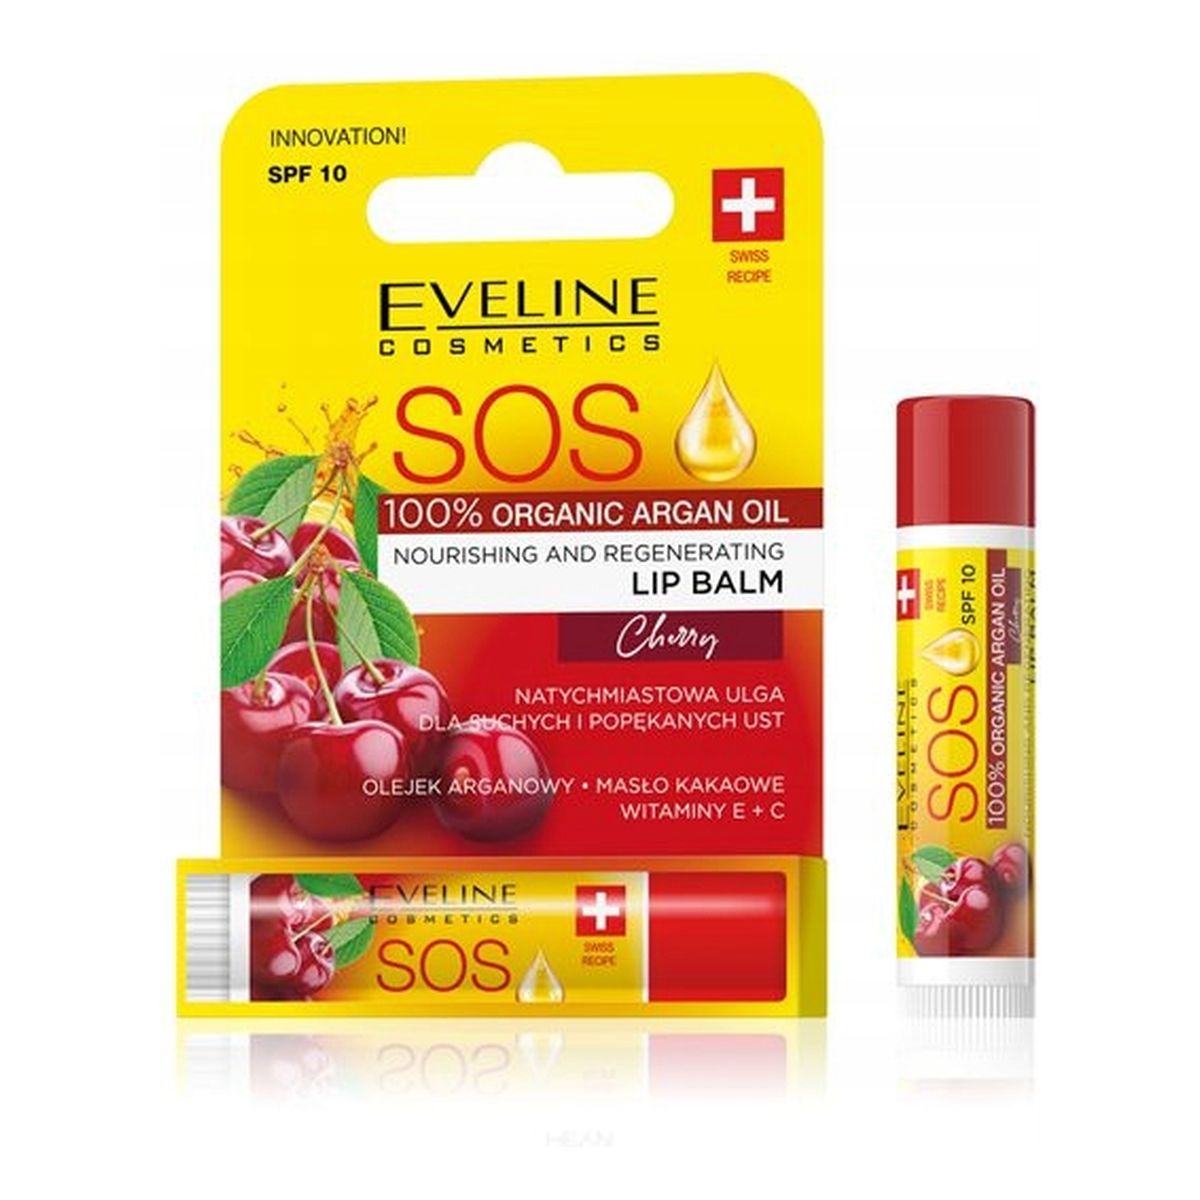 Altruist Dermatologist Sunscreen SPF 50 Krem przeciwsłoneczny ochronny z filtrami + Eveline Balsam do ust Cherry